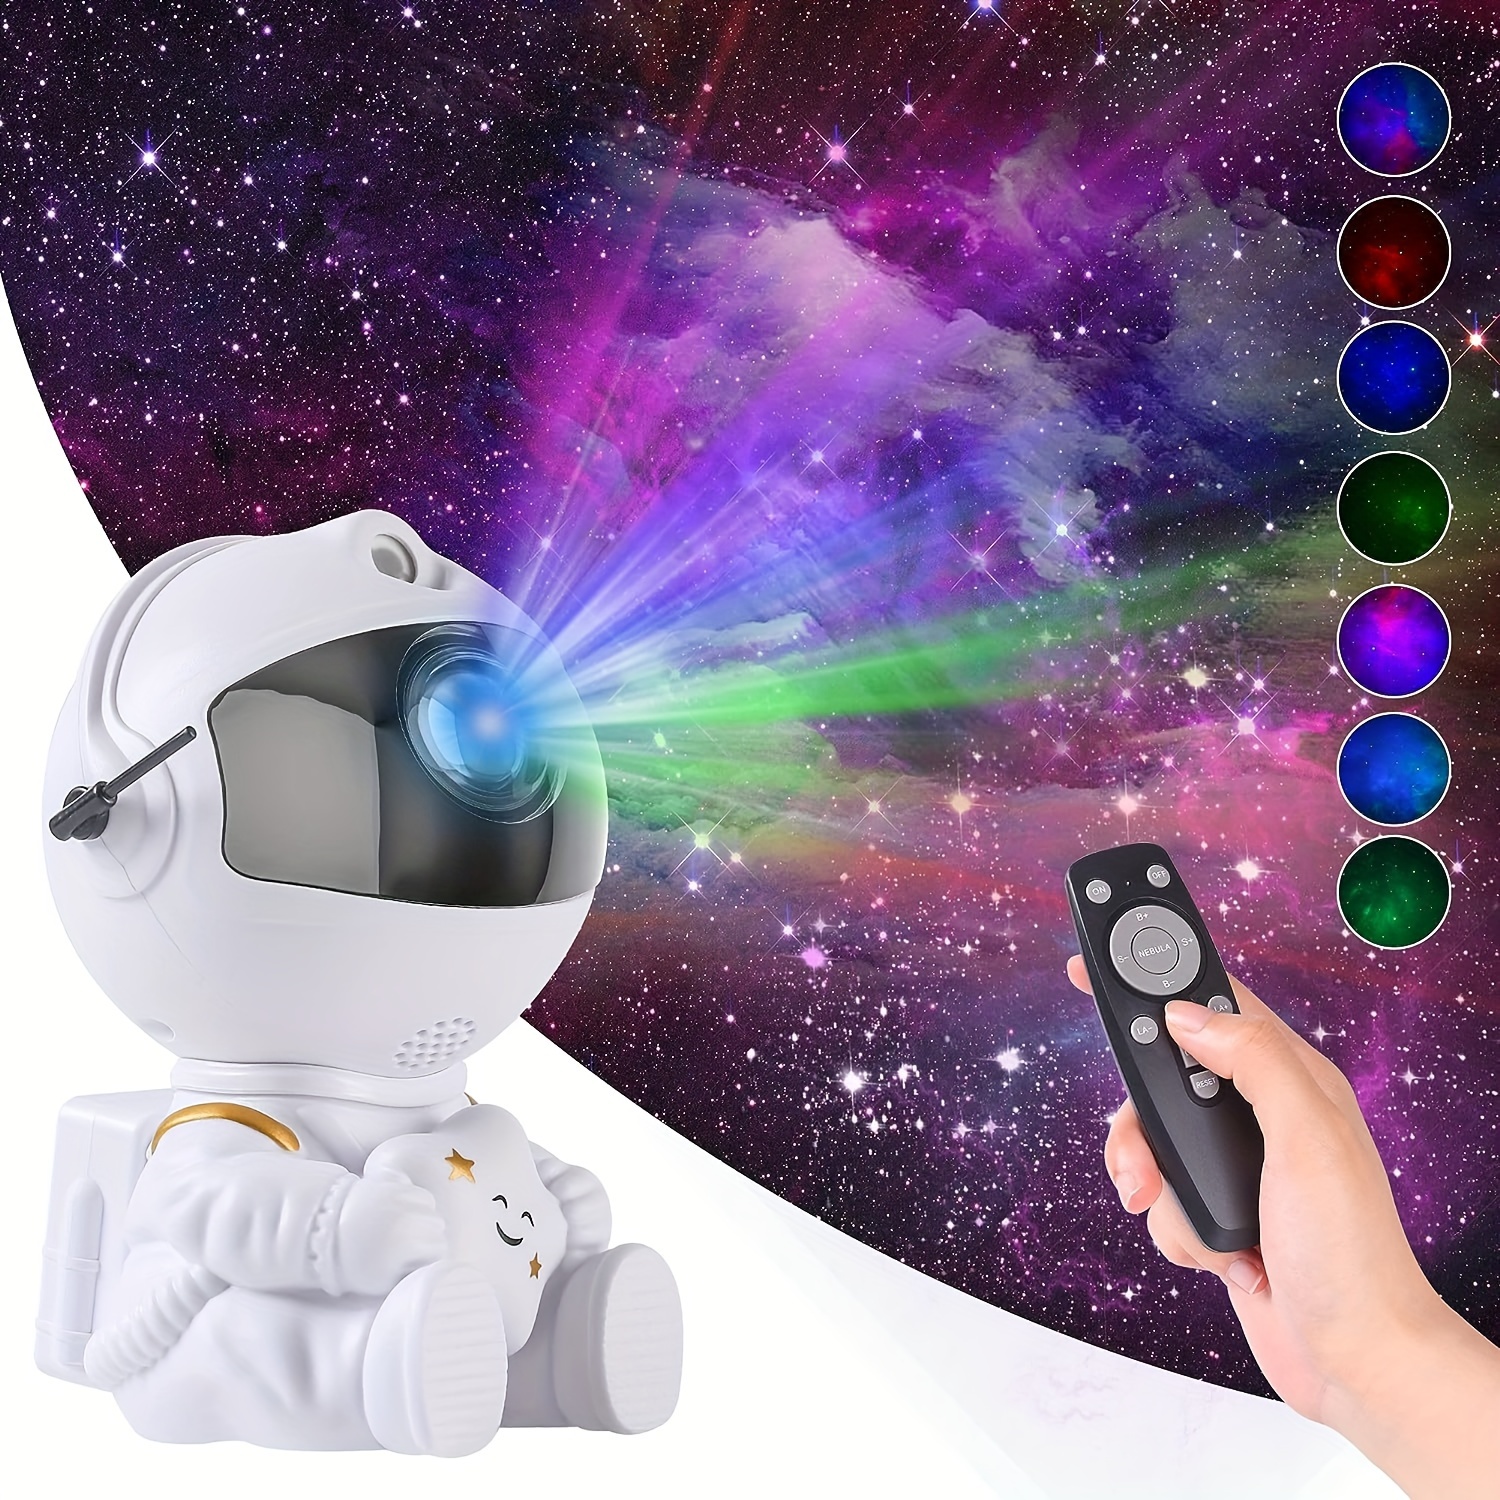 1 projecteur d'astronaute Galaxy Star, peut jouer de la musique à distance,  avec télécommande, réglage manuel libre, projection de réglage de la tête à  360 degrés, très approprié pour la décoration du